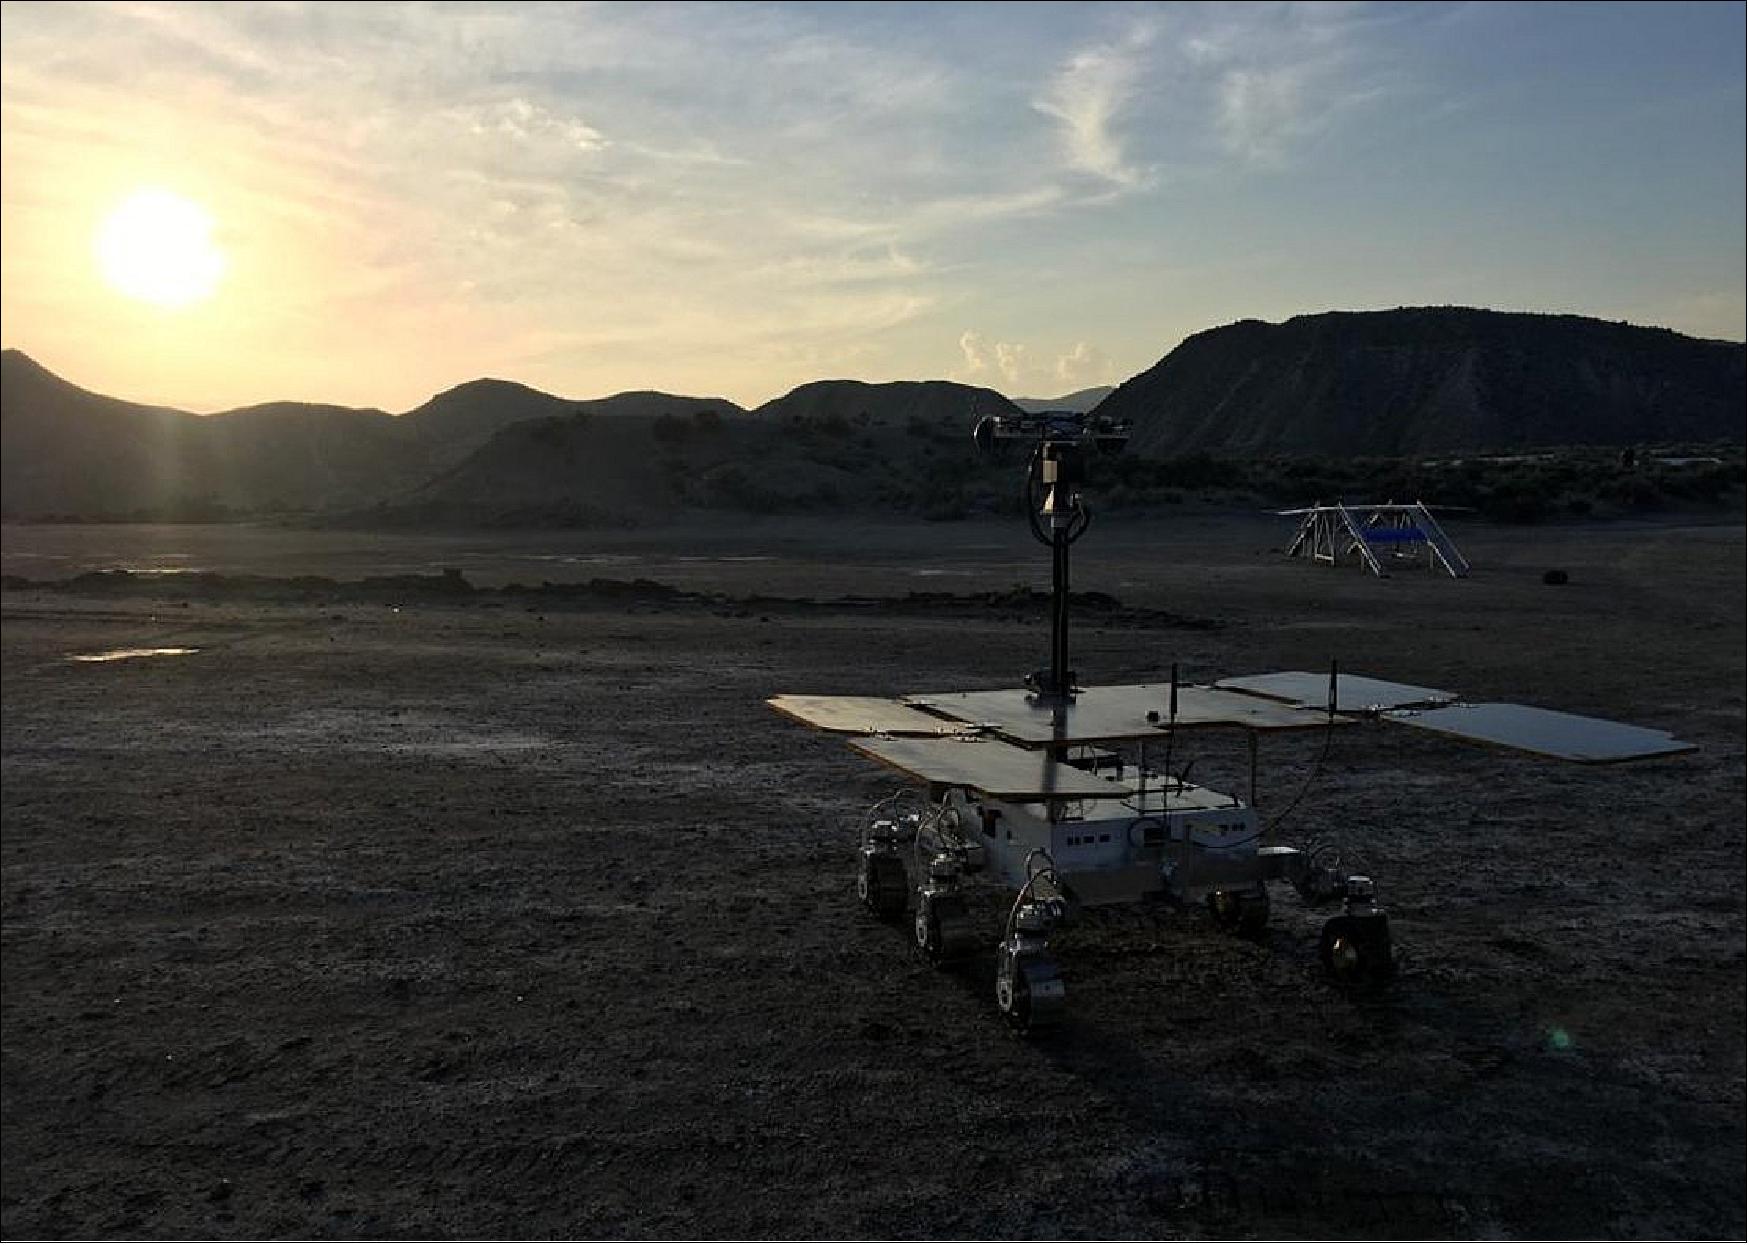 Figure 81: ExoMars rover field trials in the Tabernas desert in Spain (image credit: Airbus/ESA)